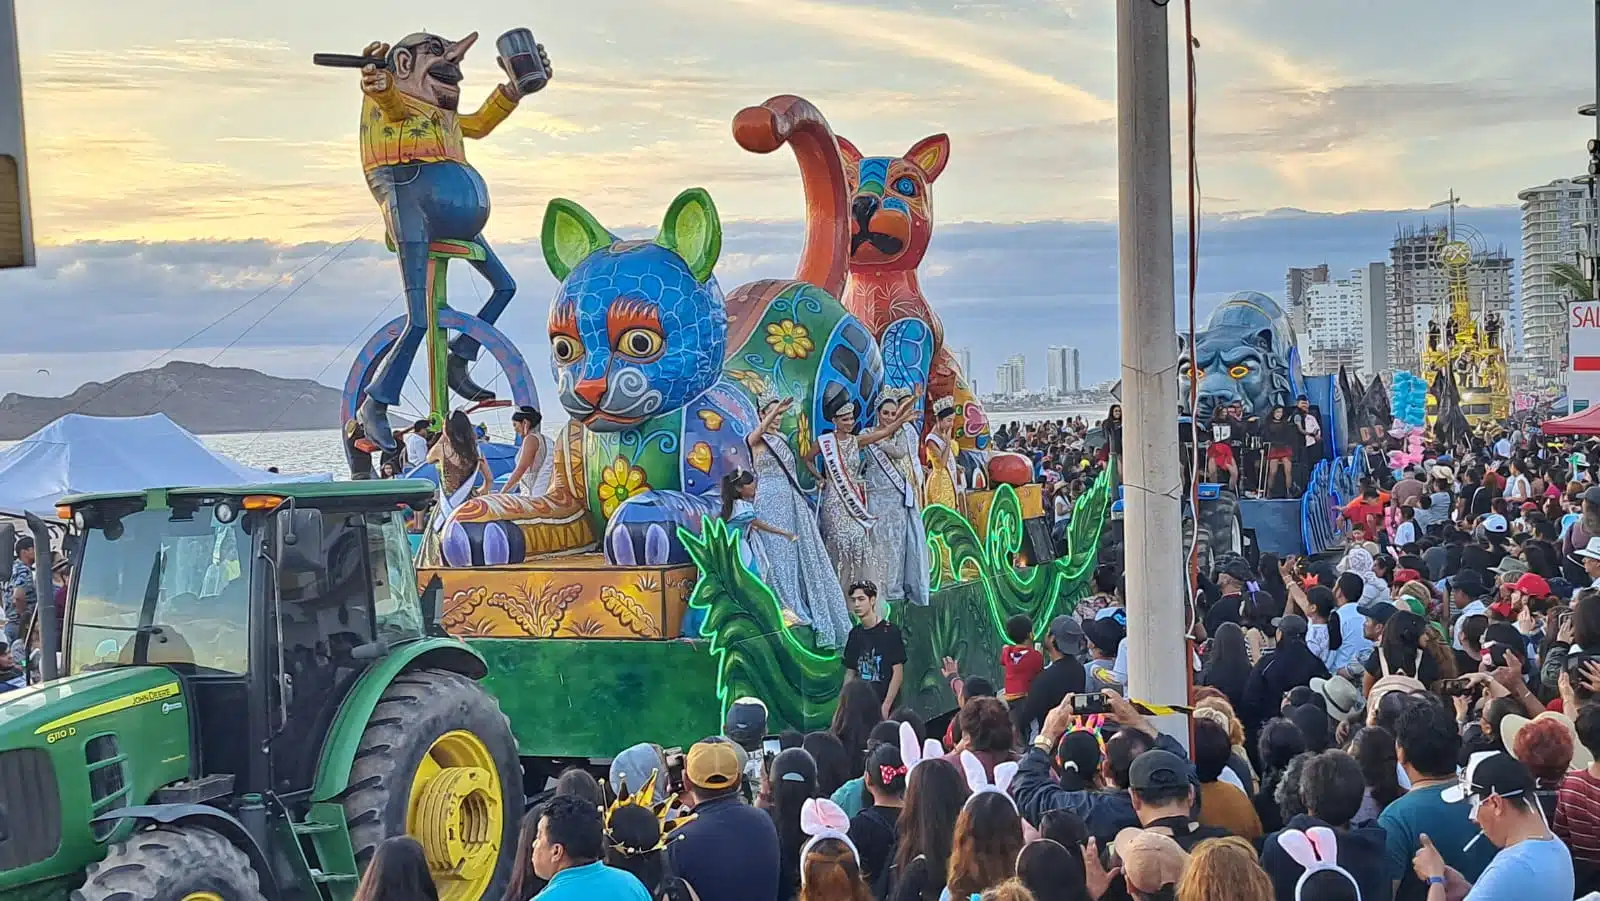 Carros alegóricos en el carnaval de Mazatlán